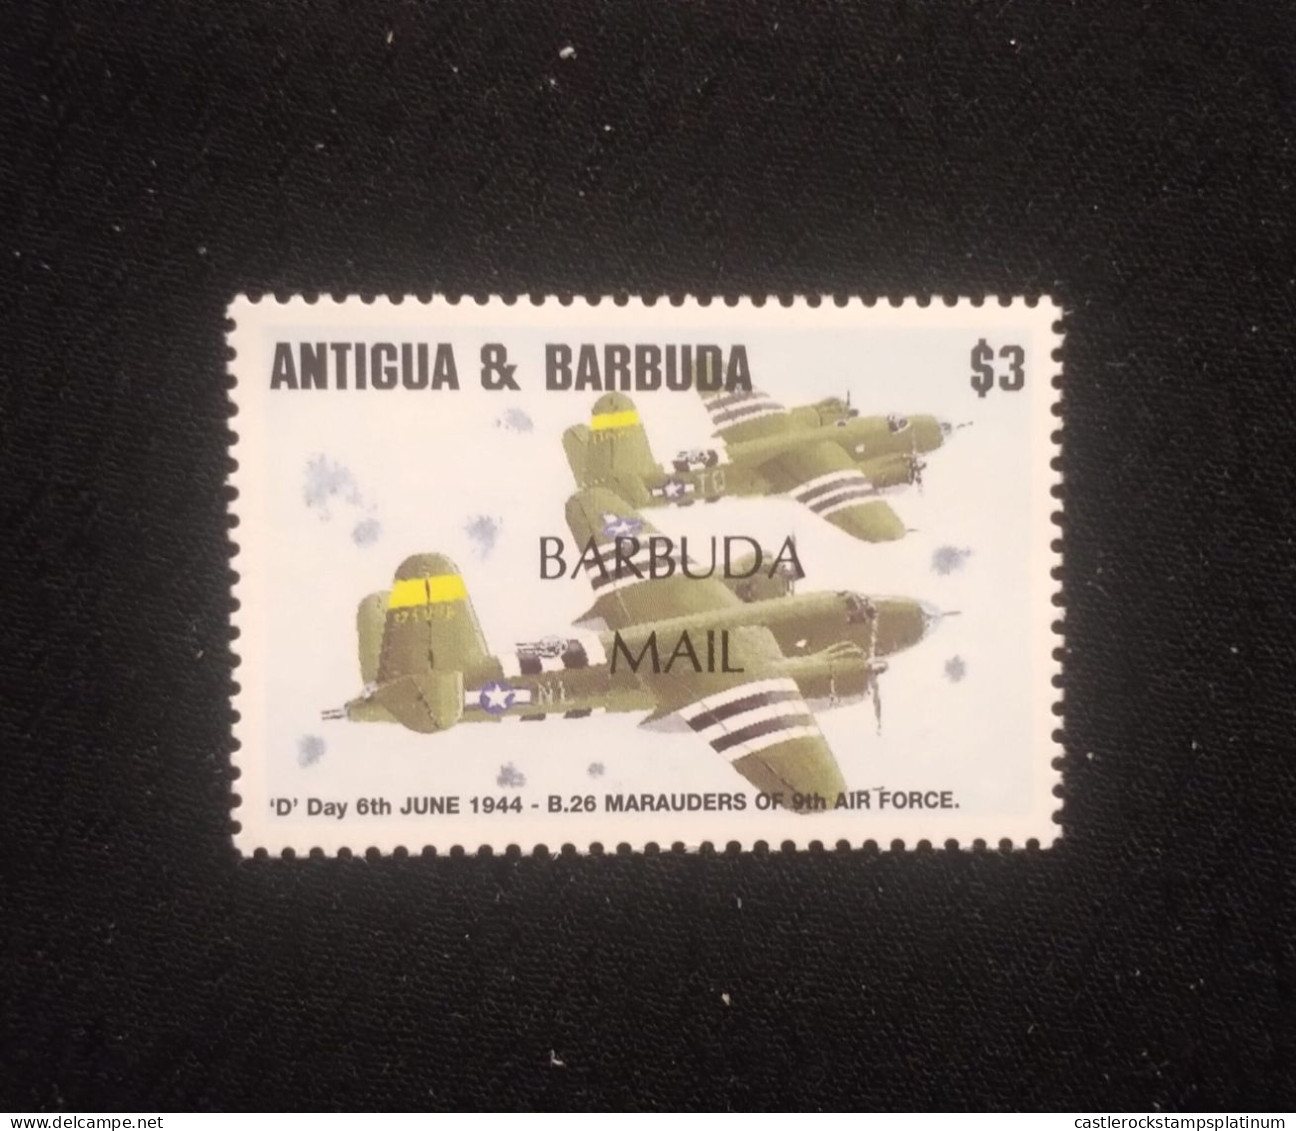 O) 1995 ANTIGUA AND BARBUDA, OLD WAR AIRCRAFT - TWIN-ENGINE BOMBER, MNH - Antigua And Barbuda (1981-...)